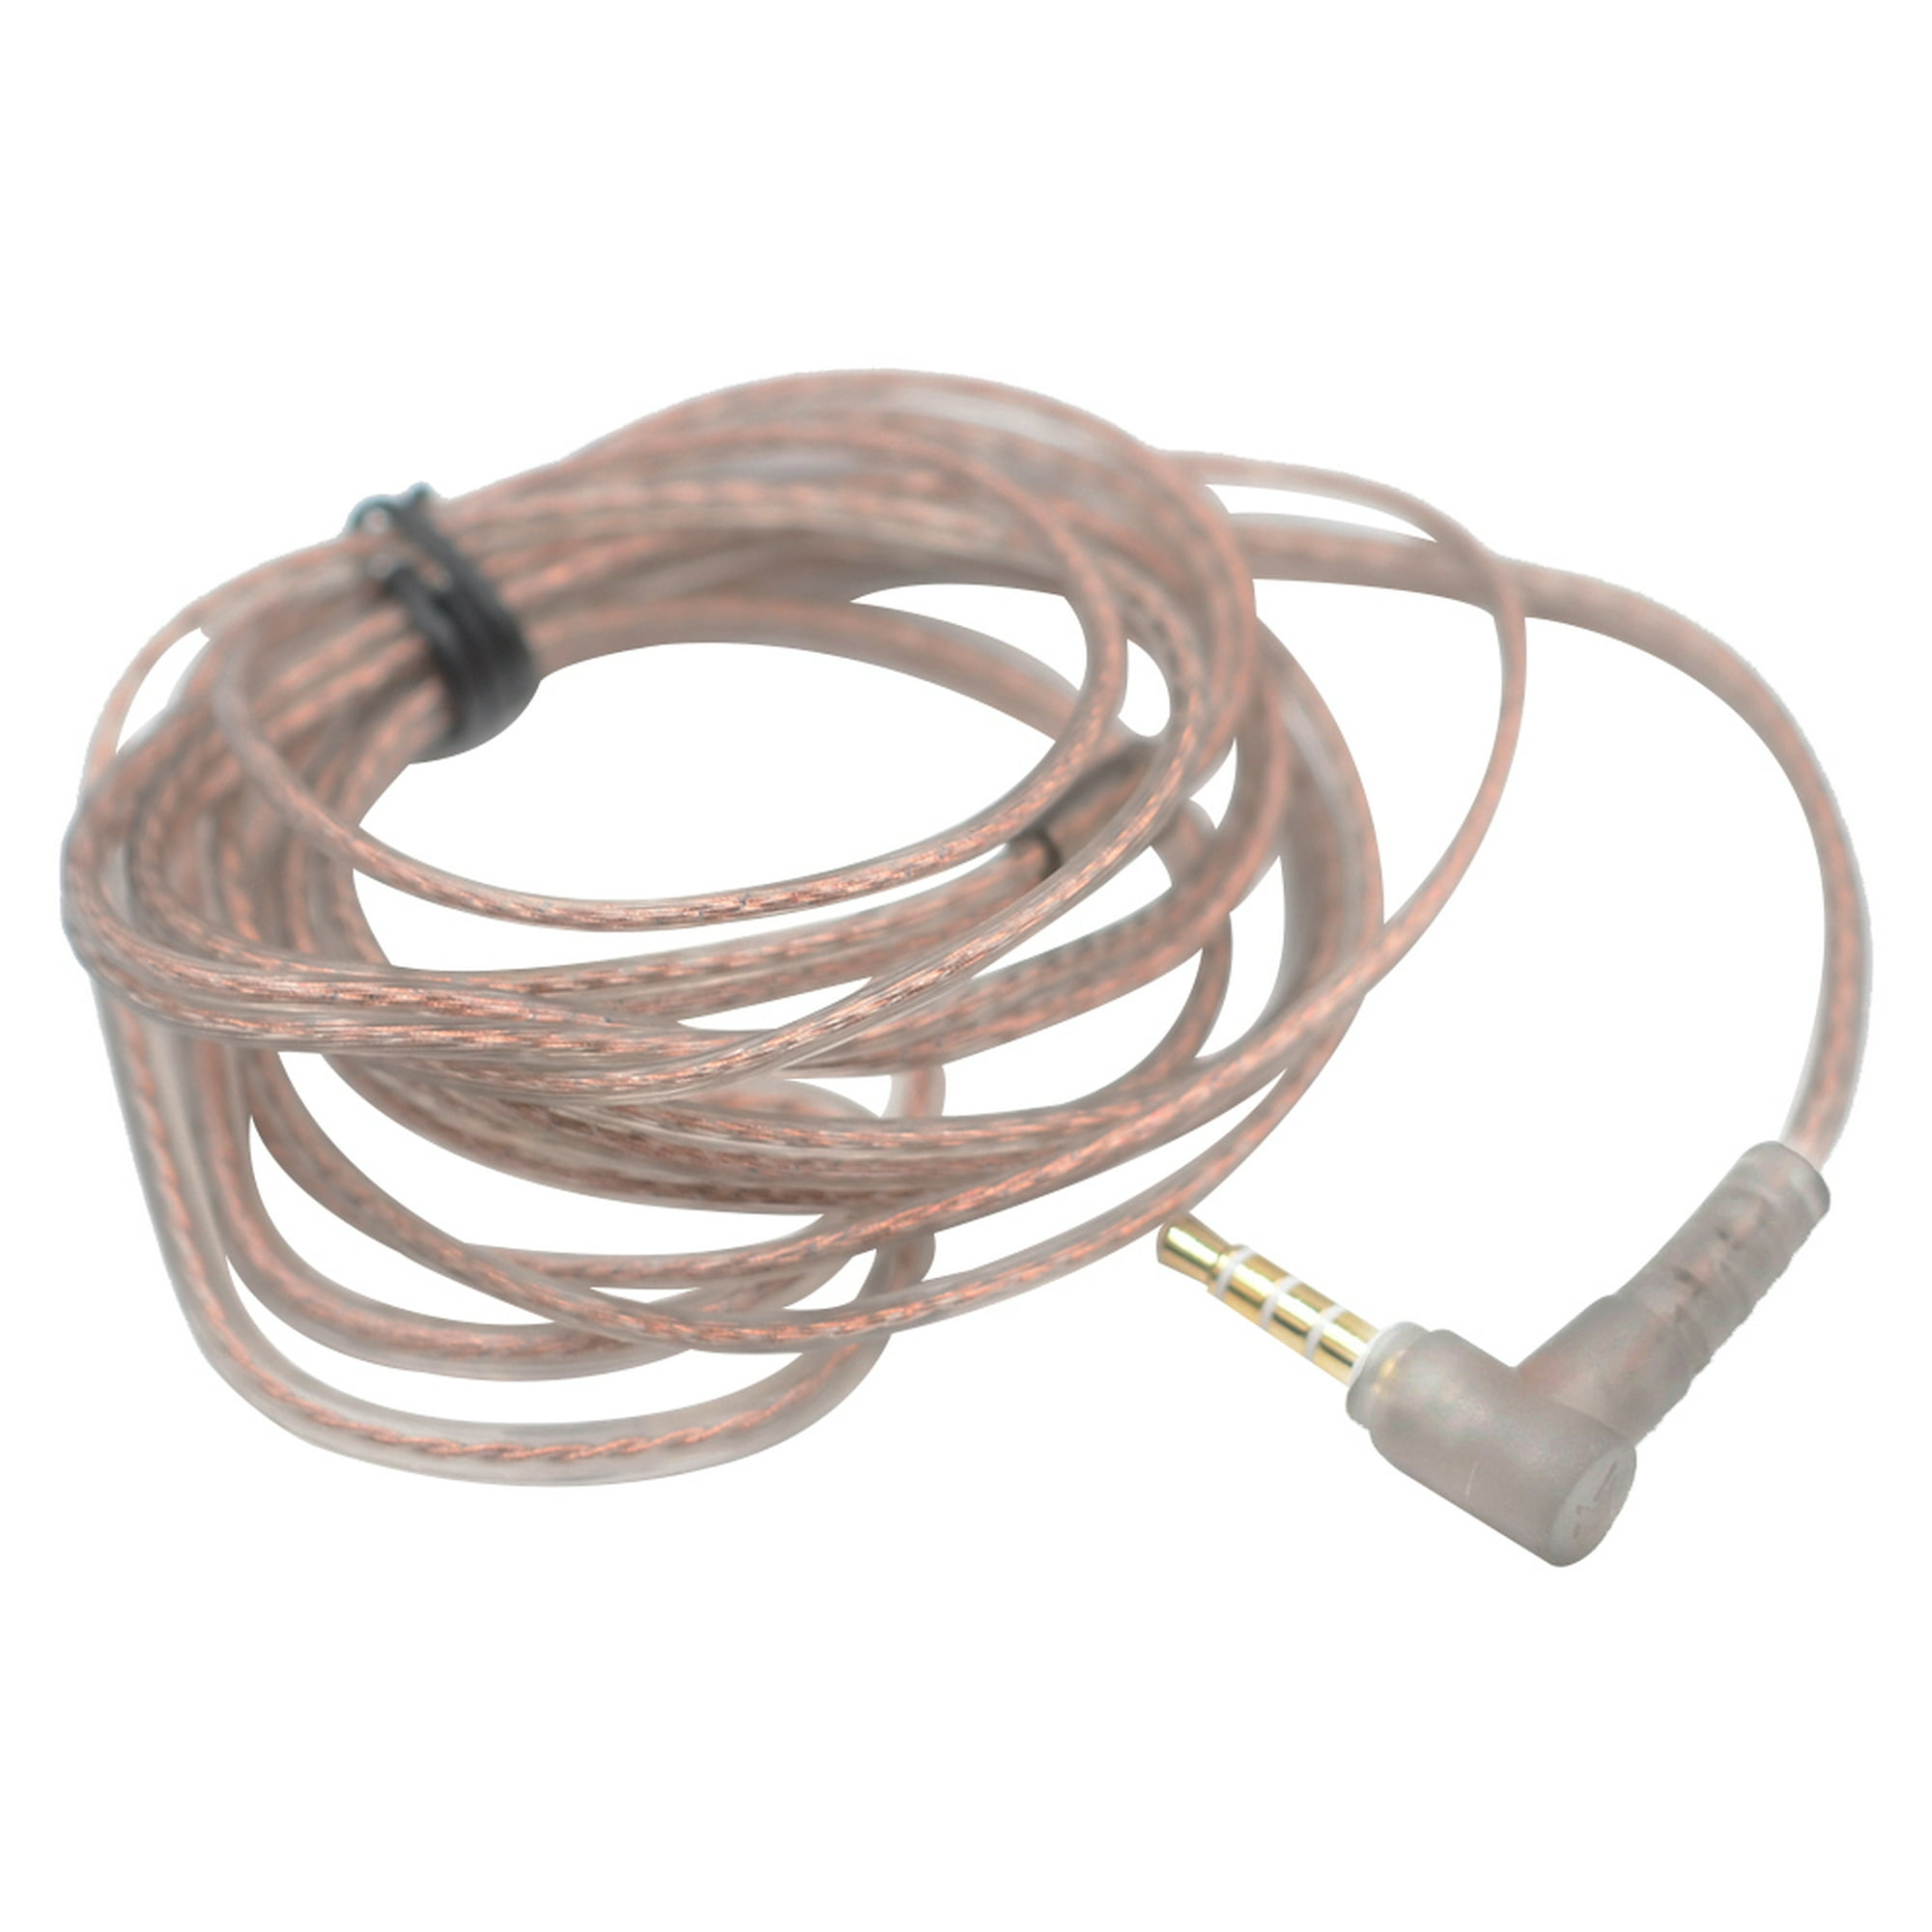 Cable altavoz 2 x 1,5mm. Puro de cobre 100% libre de oxígeno